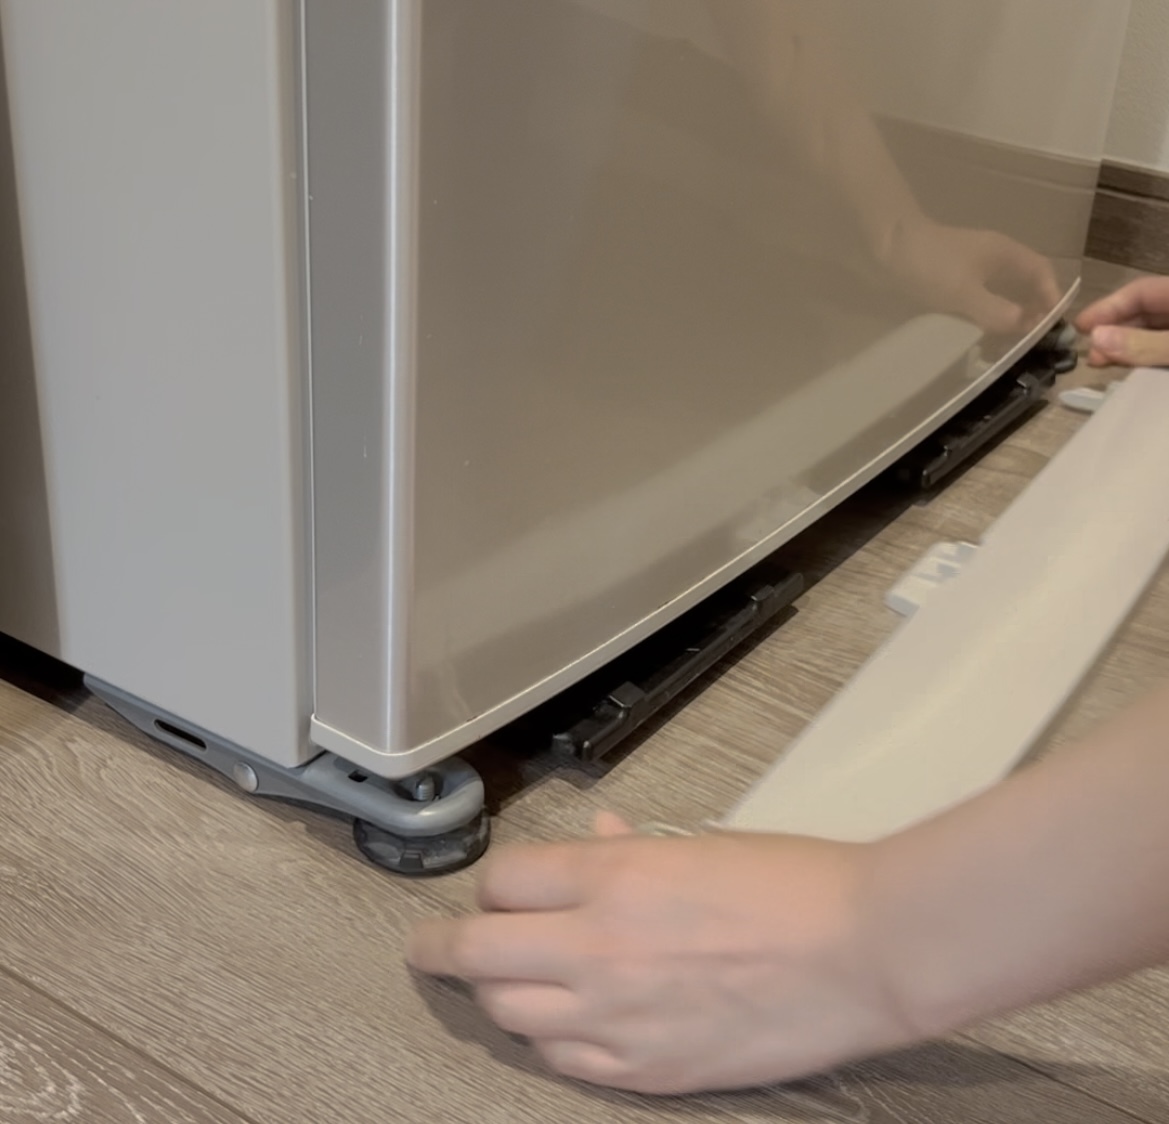 冷蔵庫のカバーは簡単に引っ張ればはずれます。